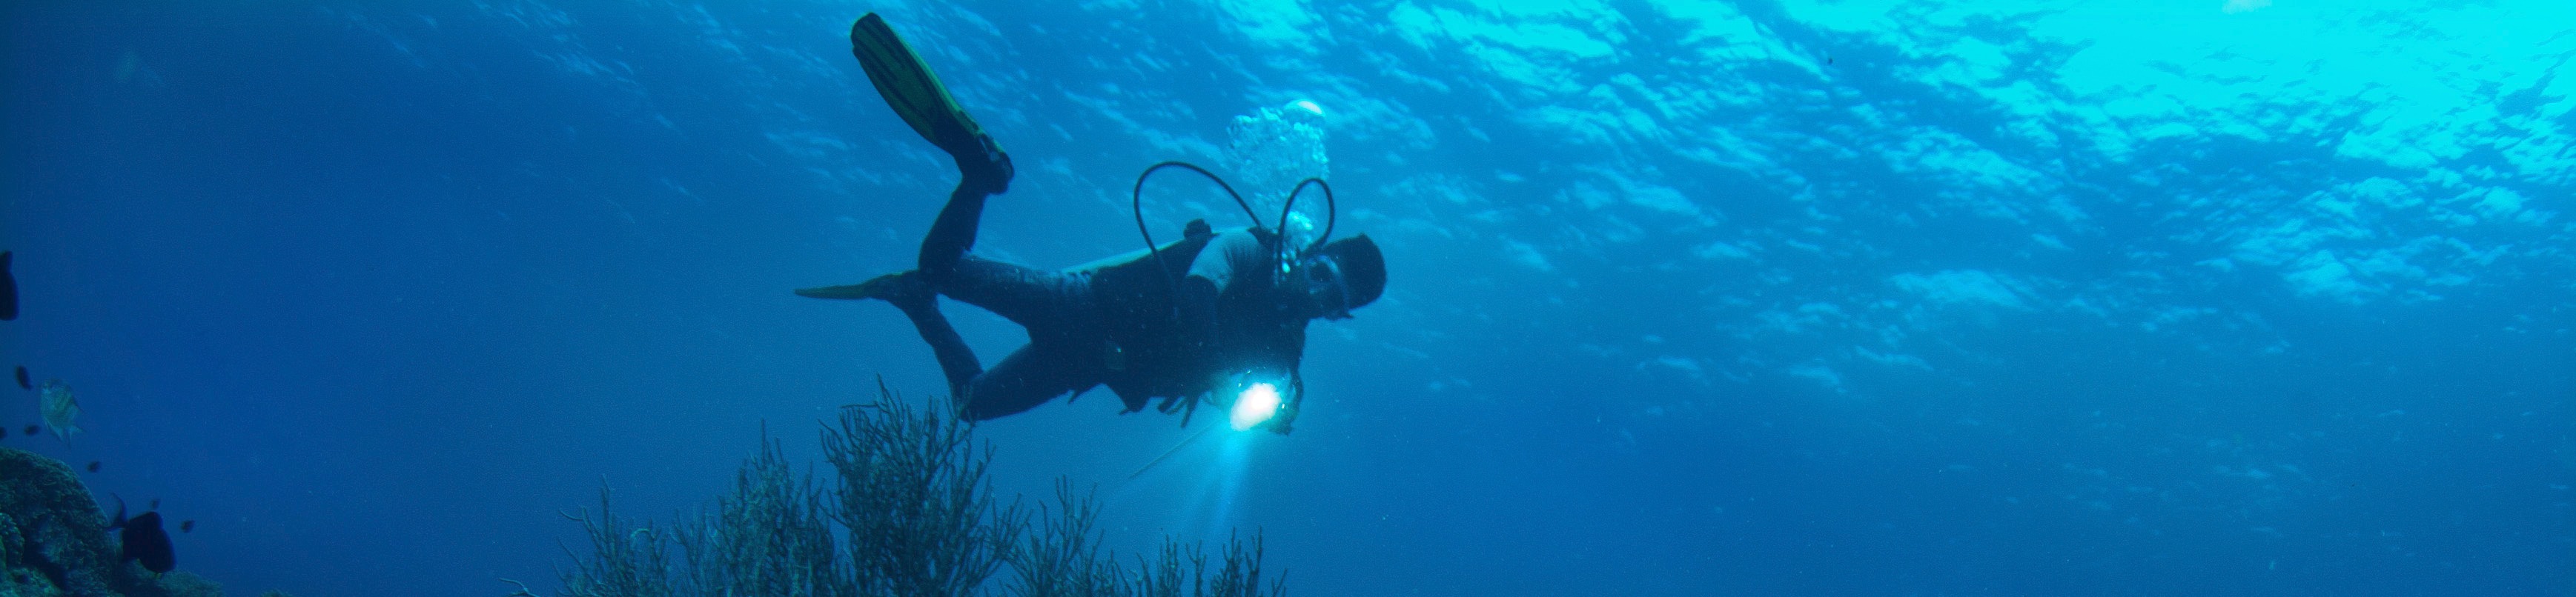 內格羅斯島 PADI 五星潛水中心初學者潛水課程